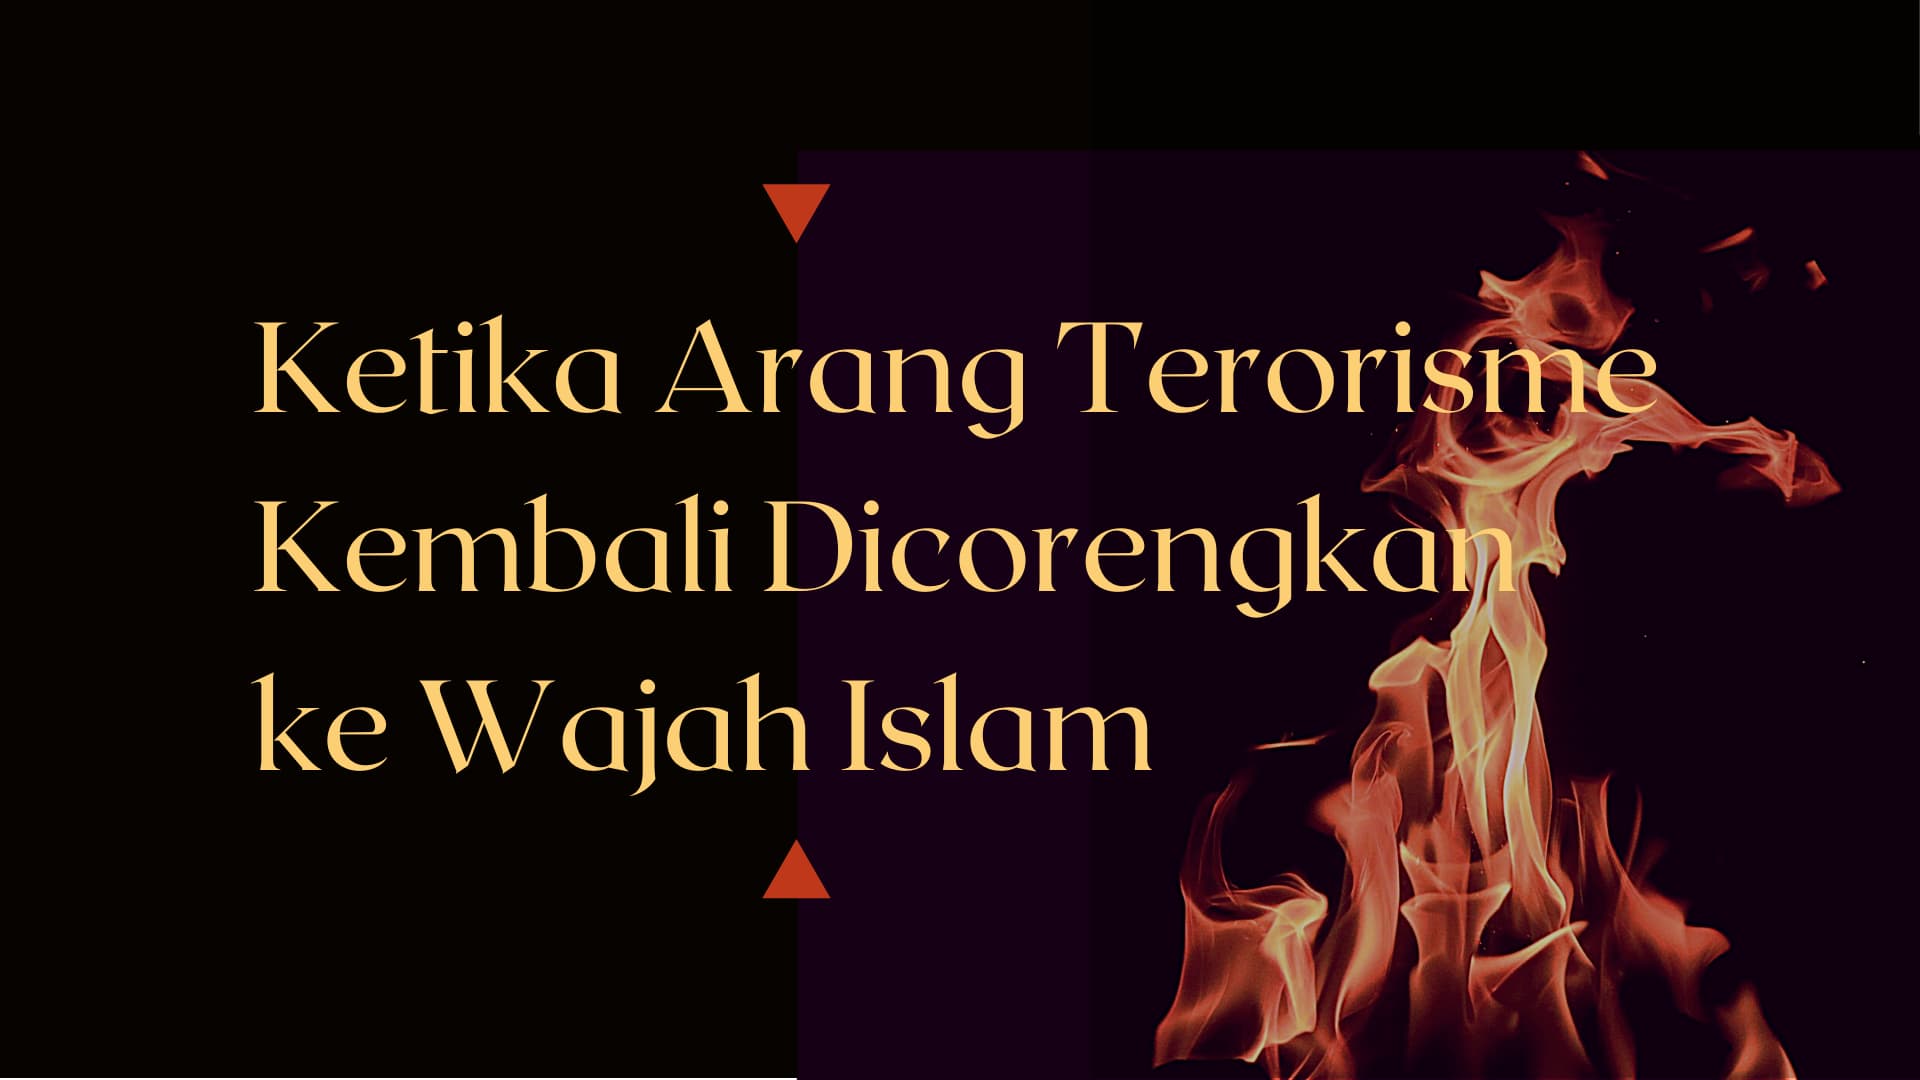 Ketika Arang Terorisme Kembali Dicorengkan ke Wajah Islam